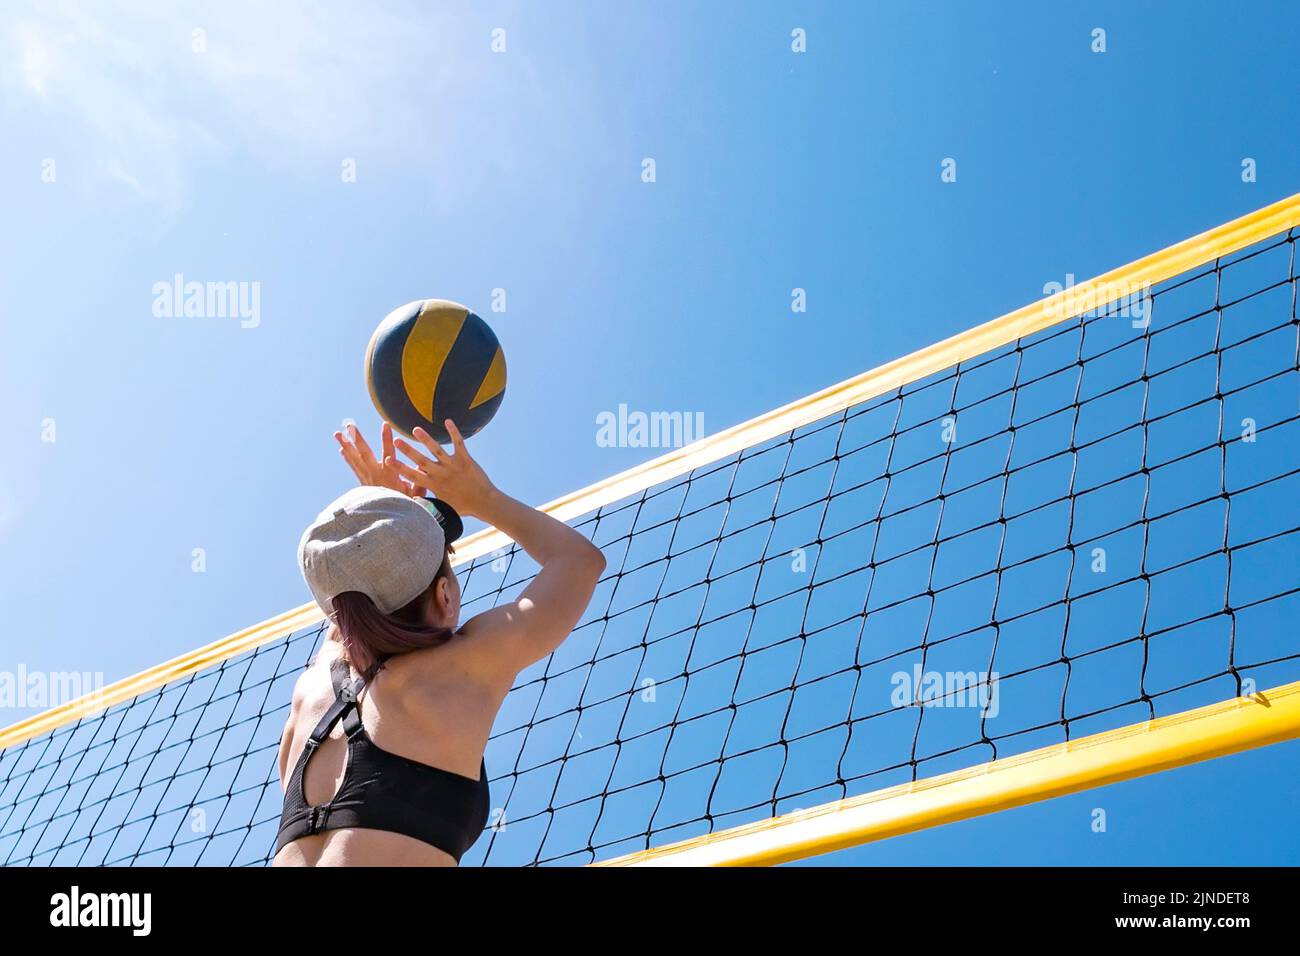 Las vacaciones de verano, el deporte y la gente concepto. joven con bola jugando voleibol en la playa. tirar la bola a través de la red de voleibol. Foto de stock